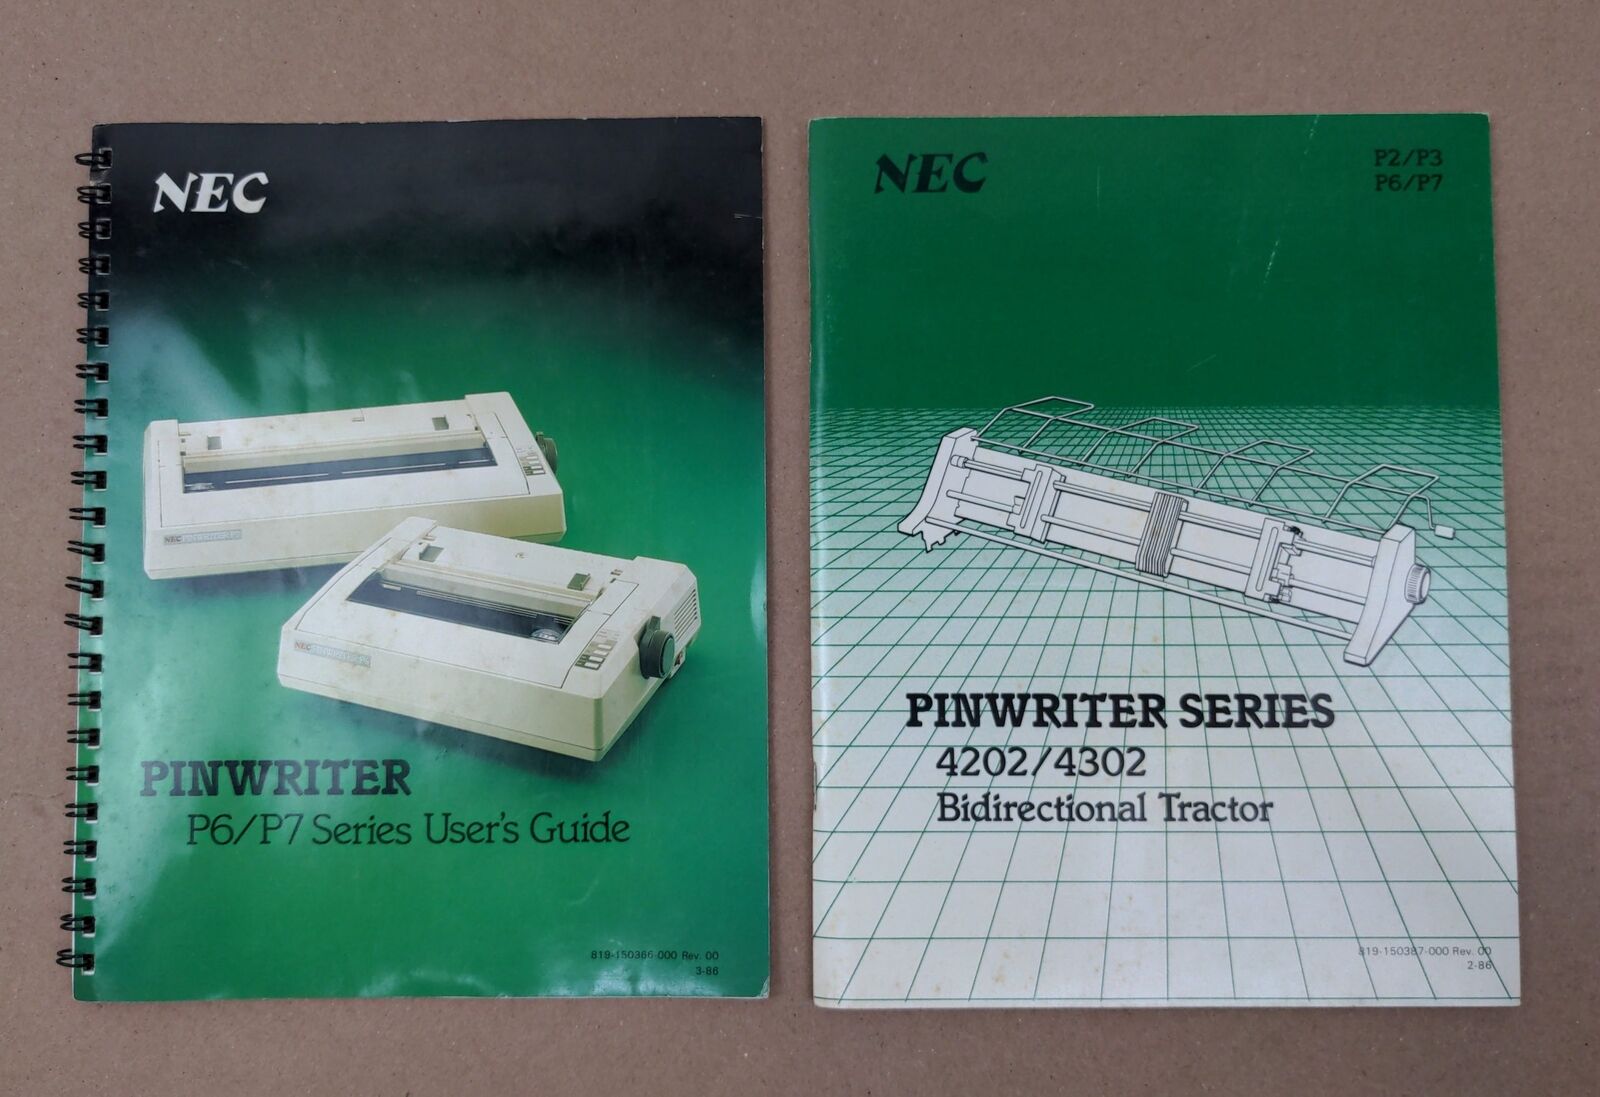 (2) NEC Pinwriter Series P2 P3 P6 P7 Vintage Printer Manuals